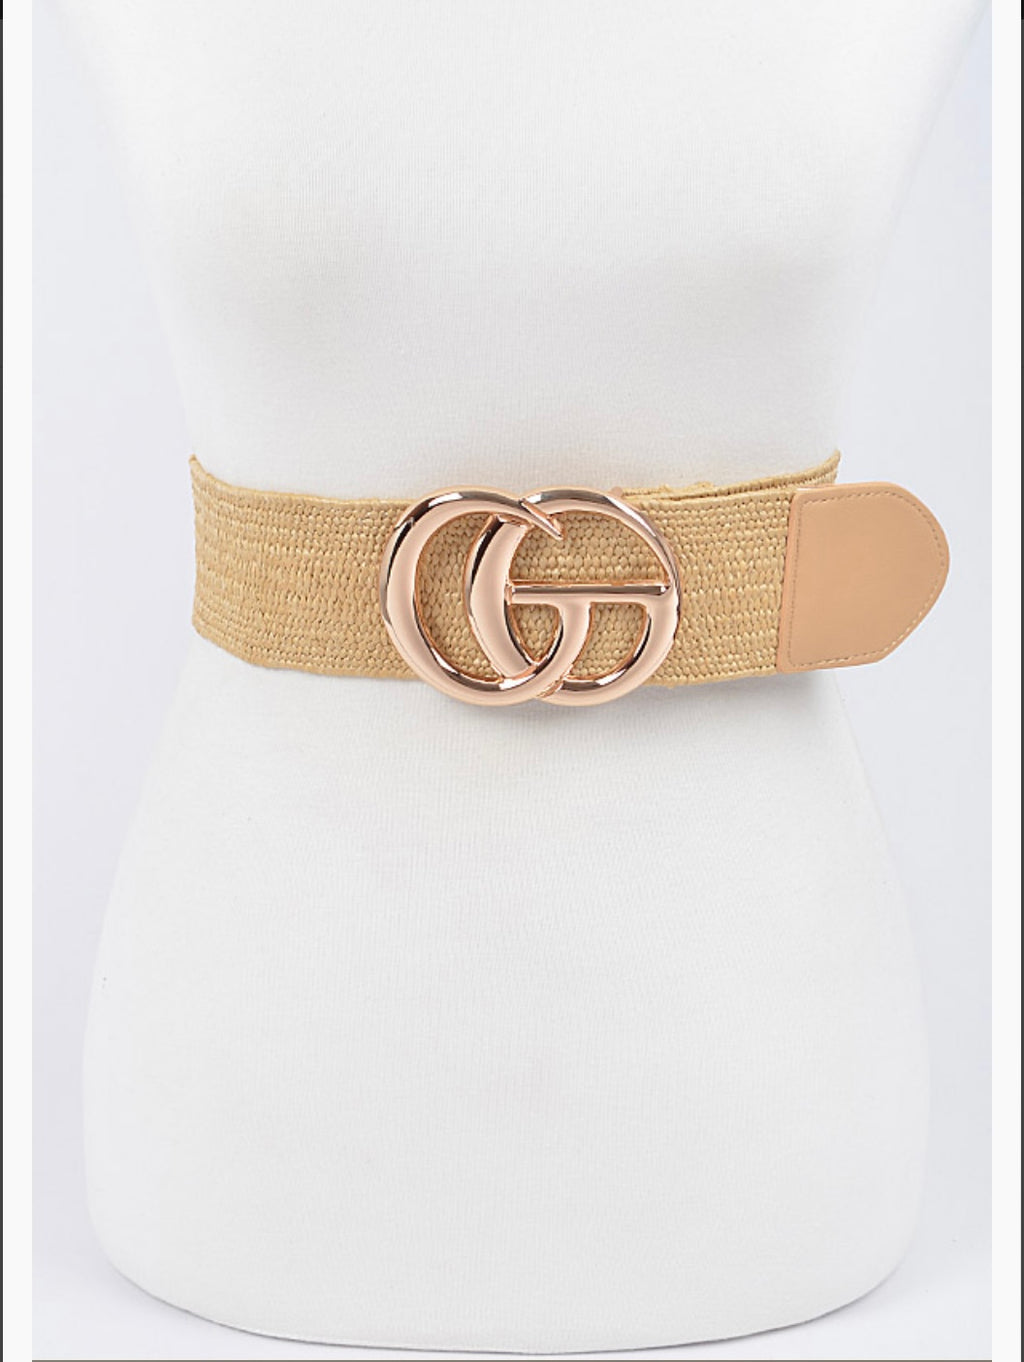 Cg Buckle Khaki Plus Size Stretch Belt